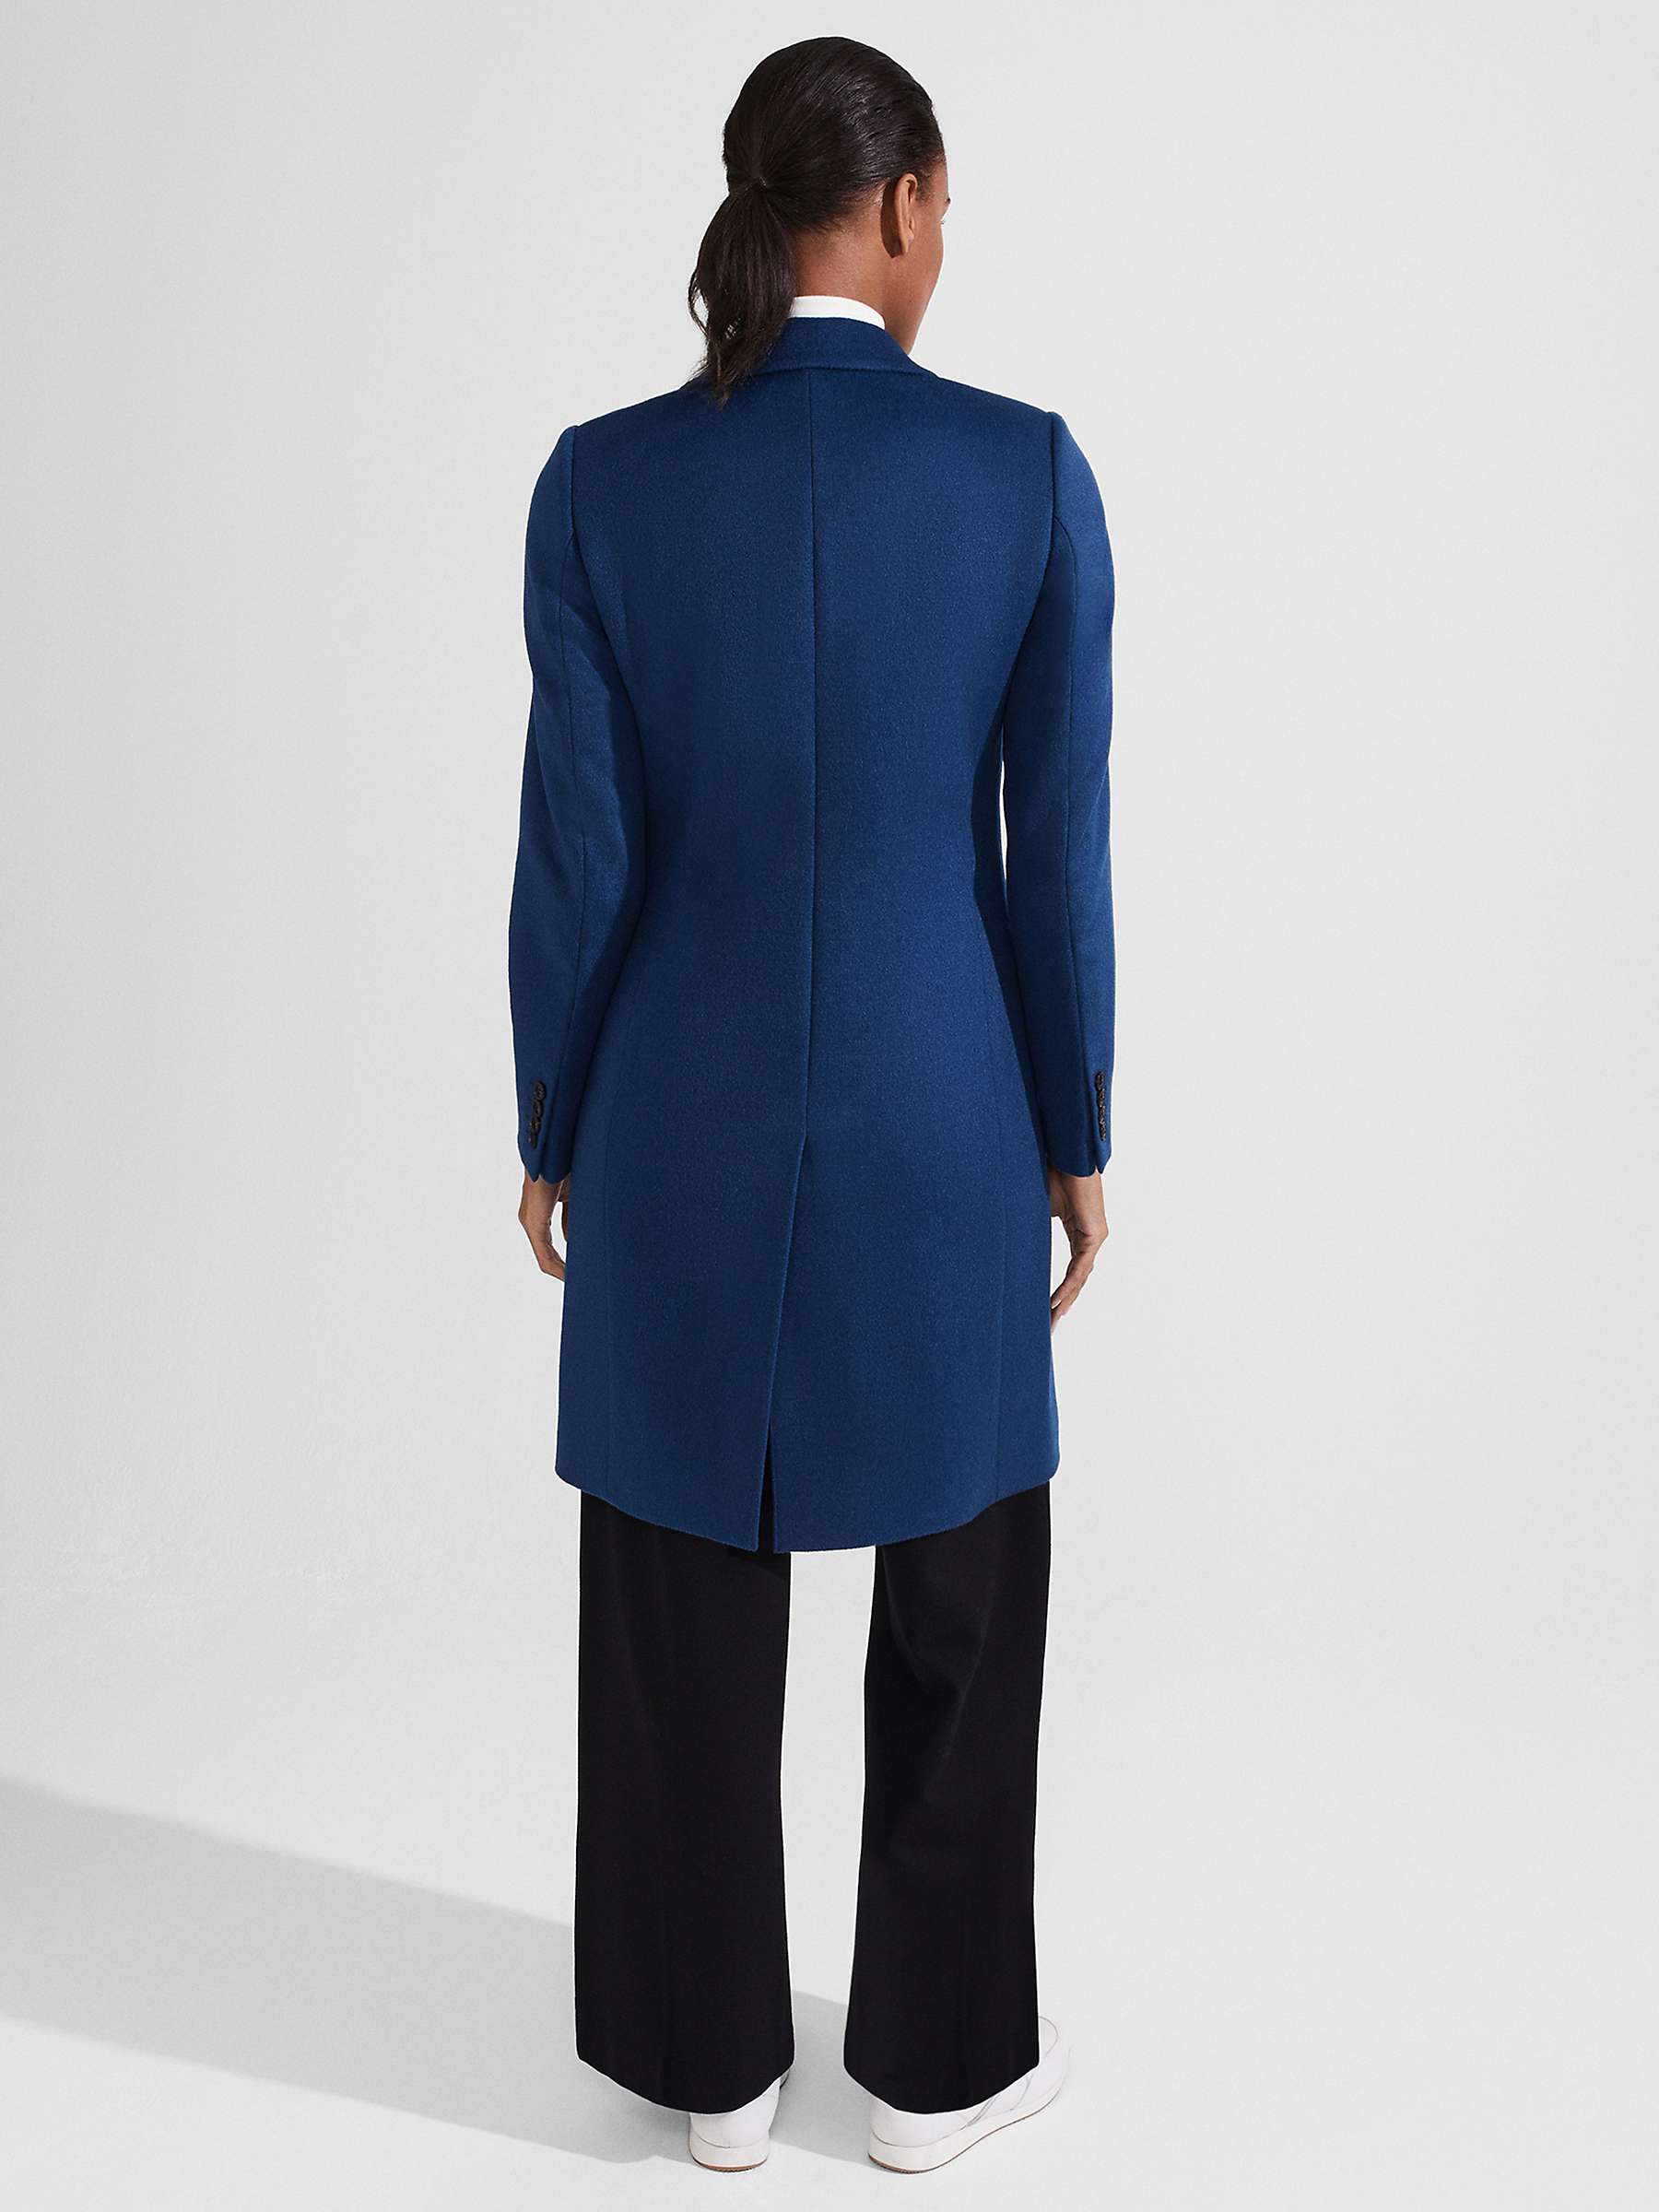 Hobbs Tilda Longline Wool Coat, Steel Blue at John Lewis & Partners